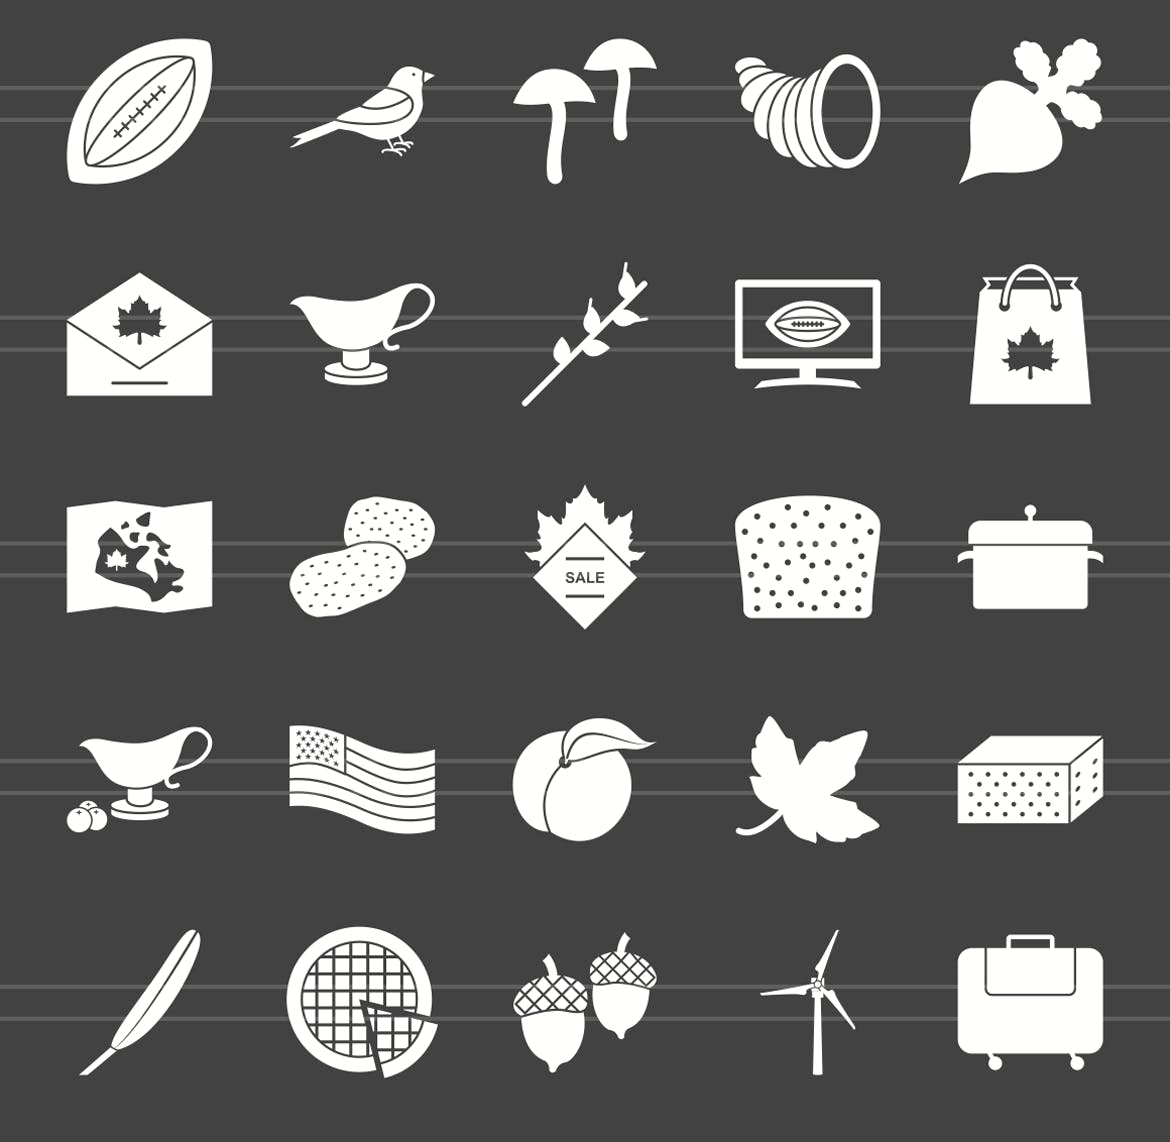 50枚感恩节主题反转色矢量字体素材库精选图标 50 Thanksgiving Glyph Inverted Icons插图(2)